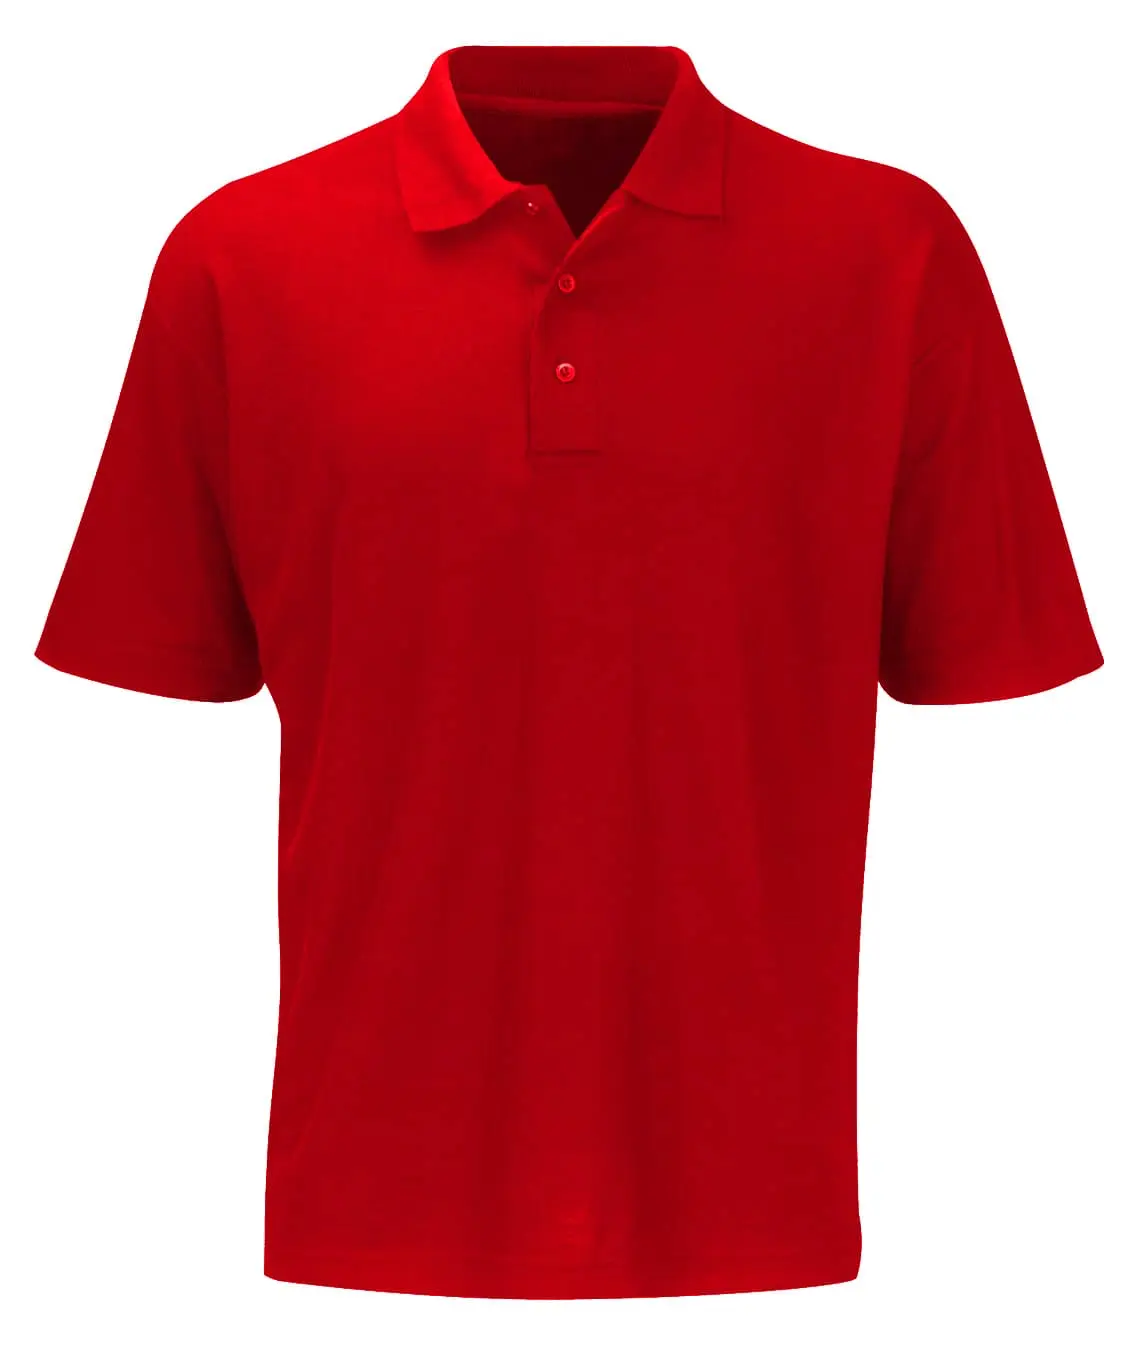 Shispar: Polo Shirt | Industrial Workwear